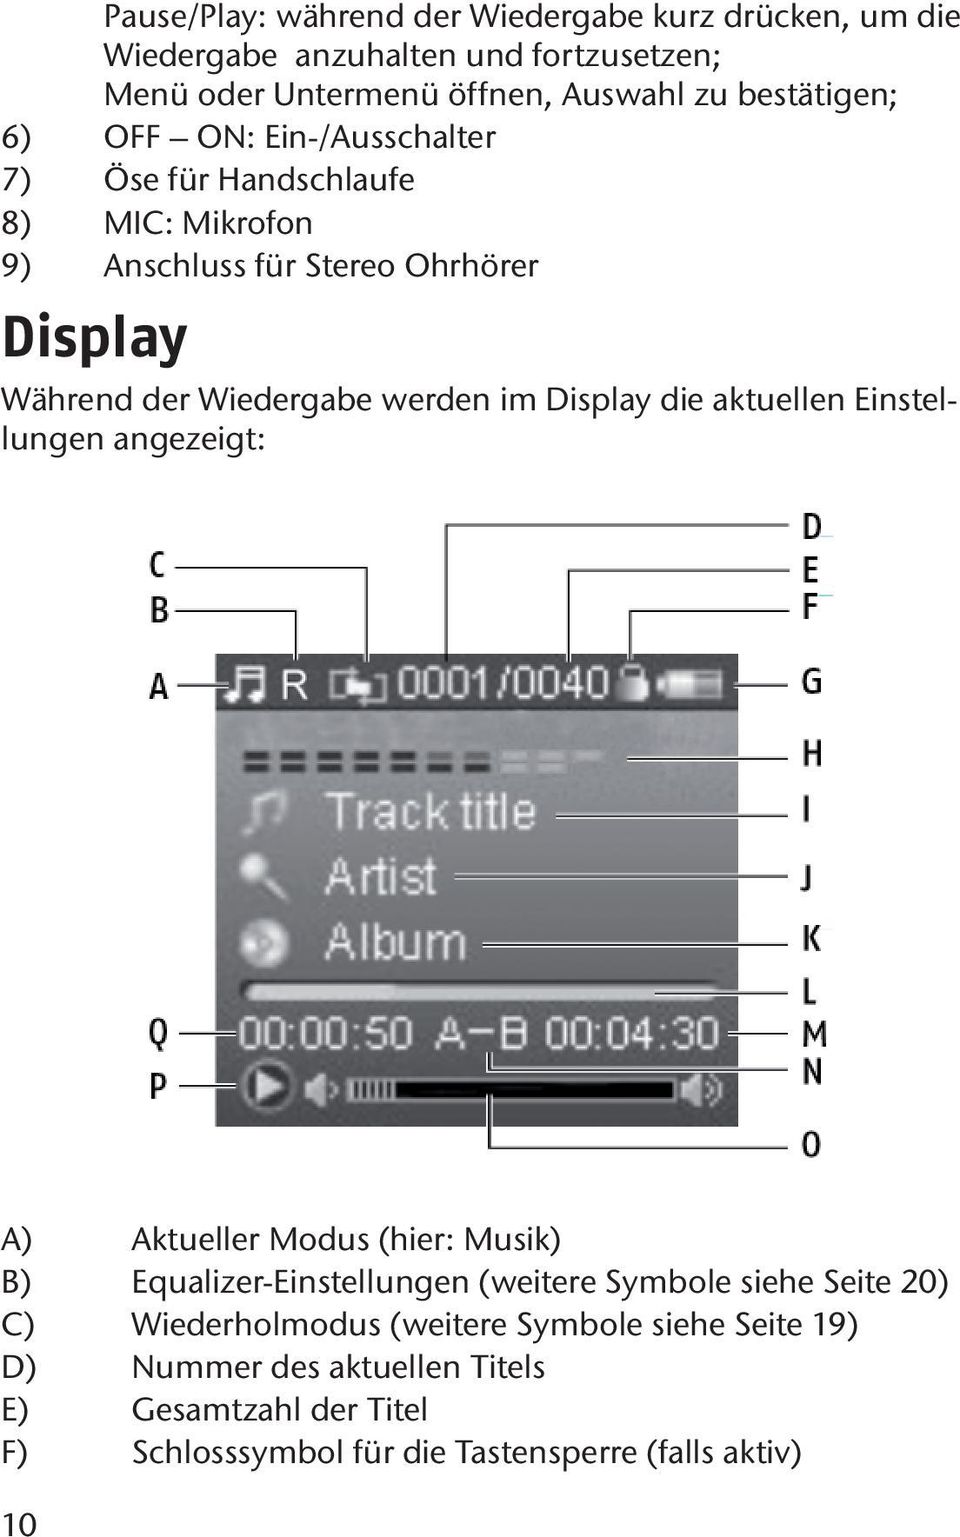 Display die aktuellen Einstellungen angezeigt: A) Aktueller Modus (hier: Musik) B) Equalizer-Einstellungen (weitere Symbole siehe Seite 20) C)